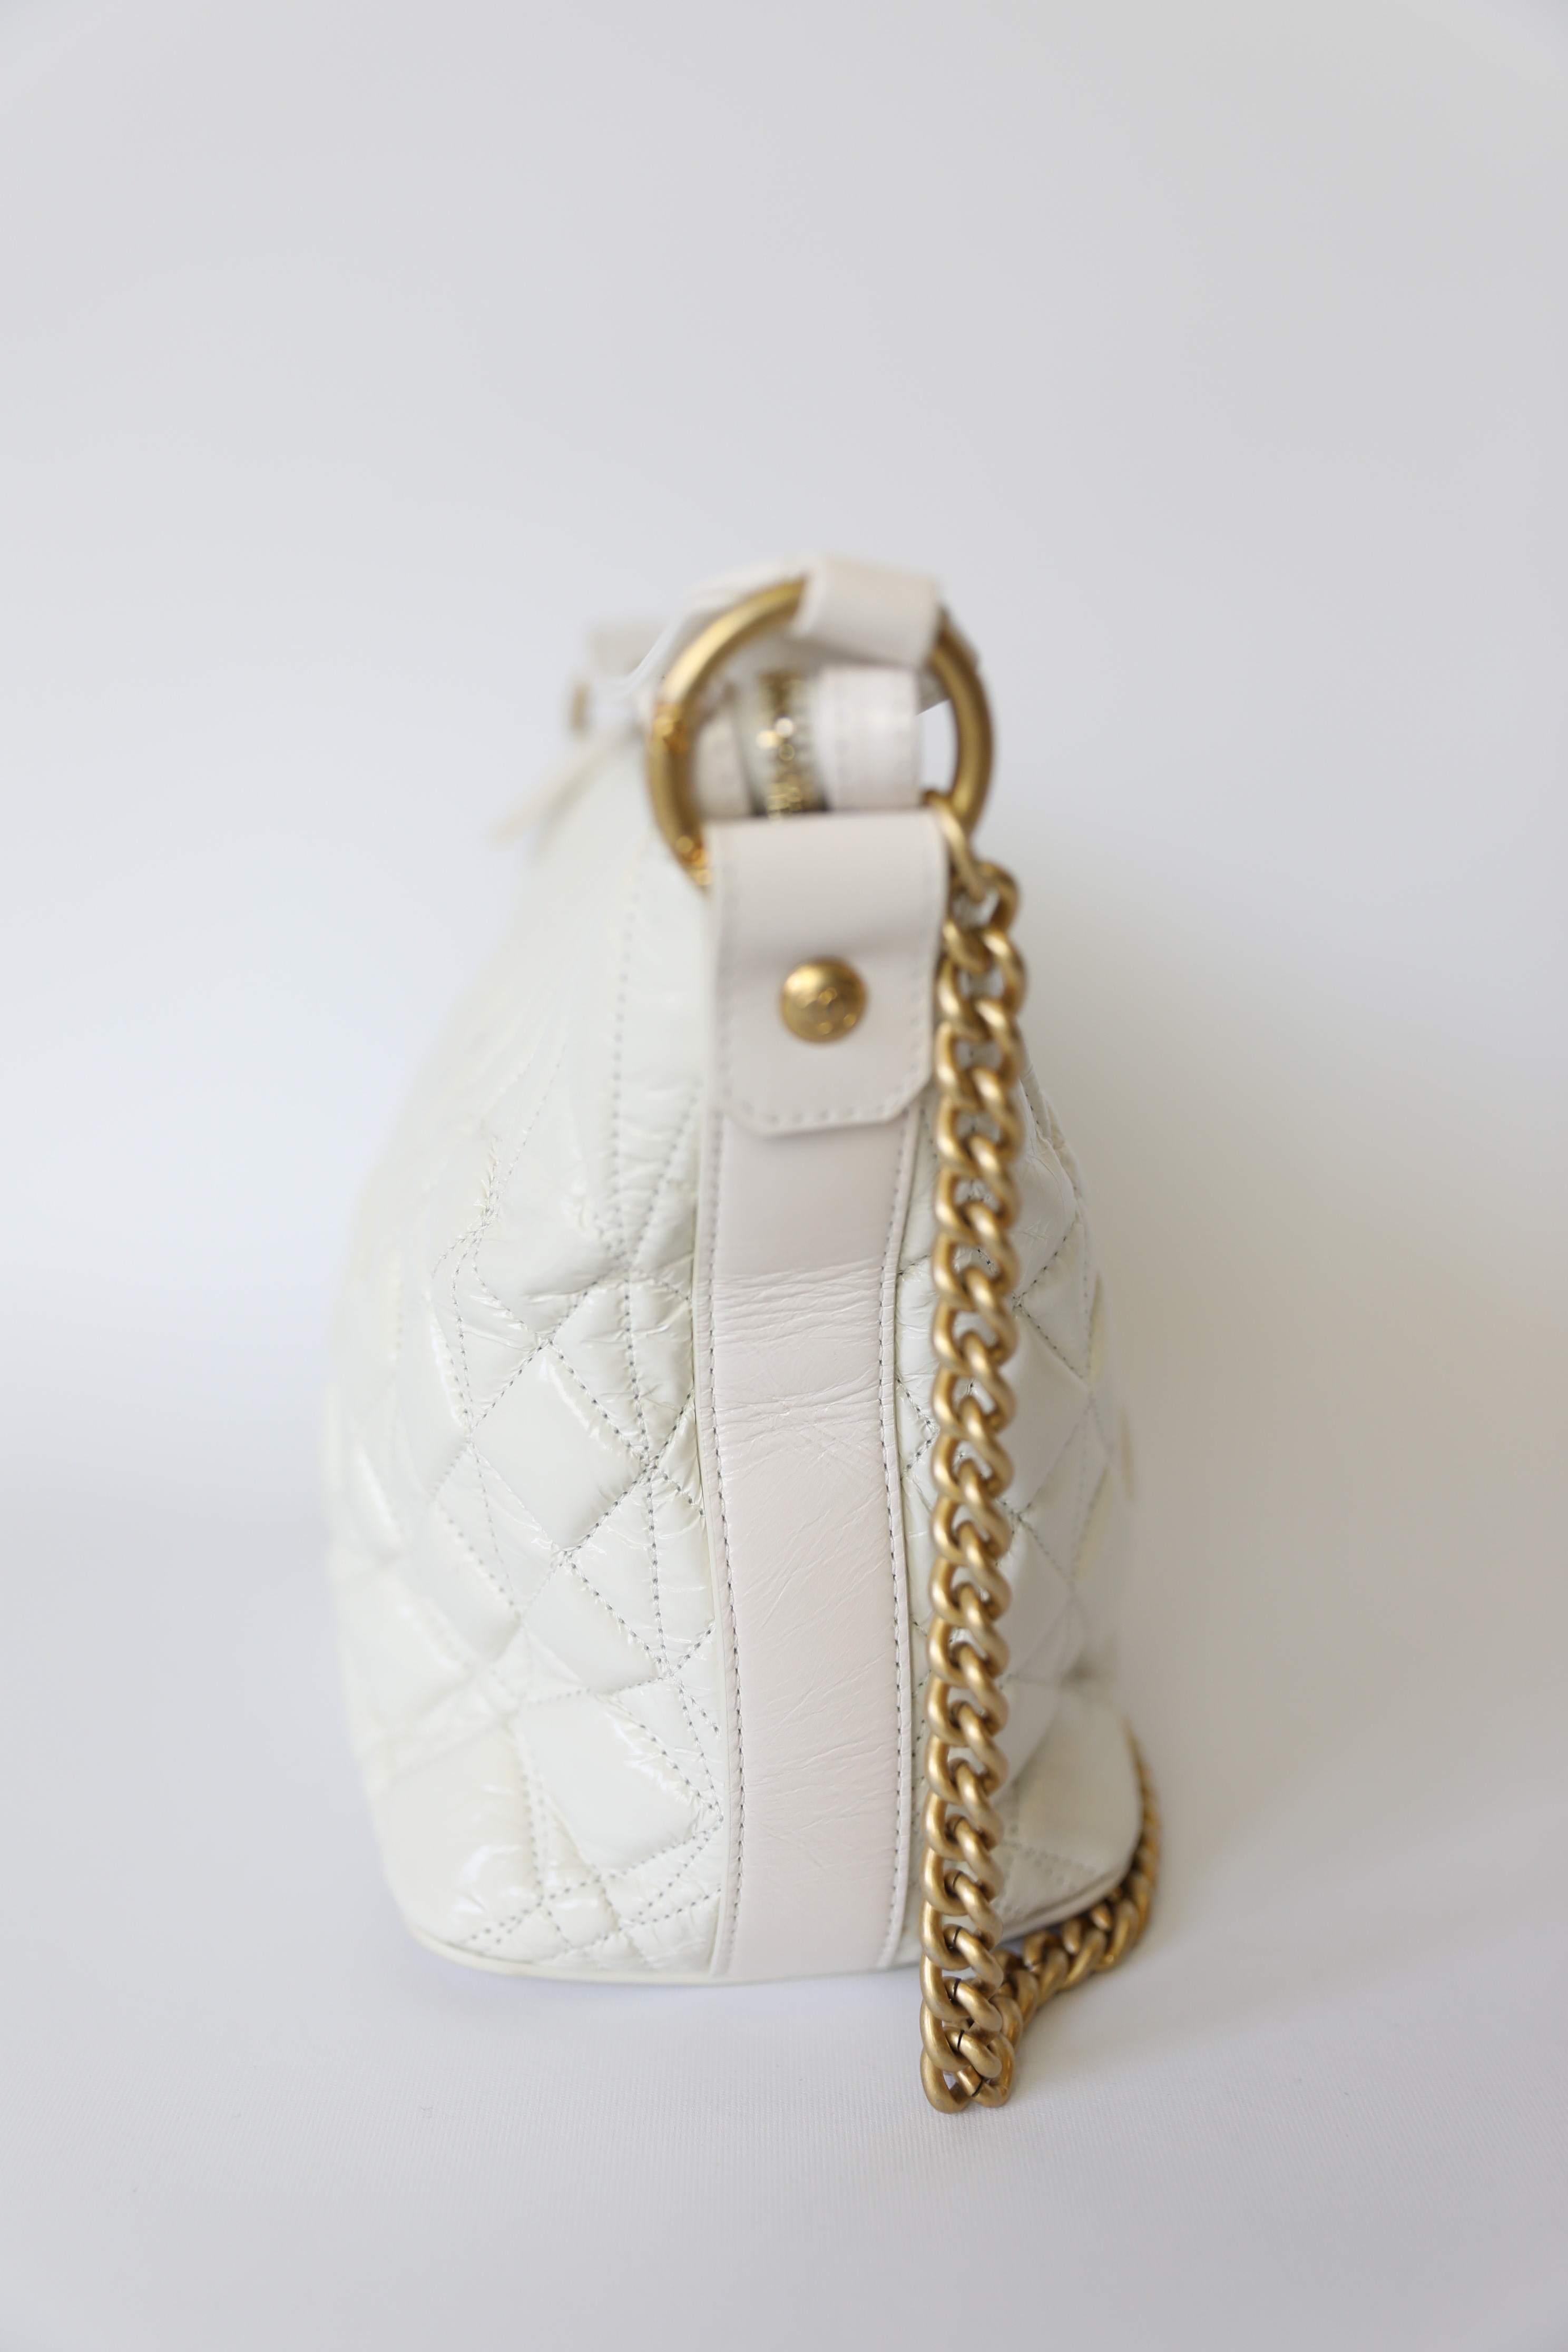 Chanel 2018 Droplet Hobo w/ Tags - White Hobos, Handbags - CHA272457